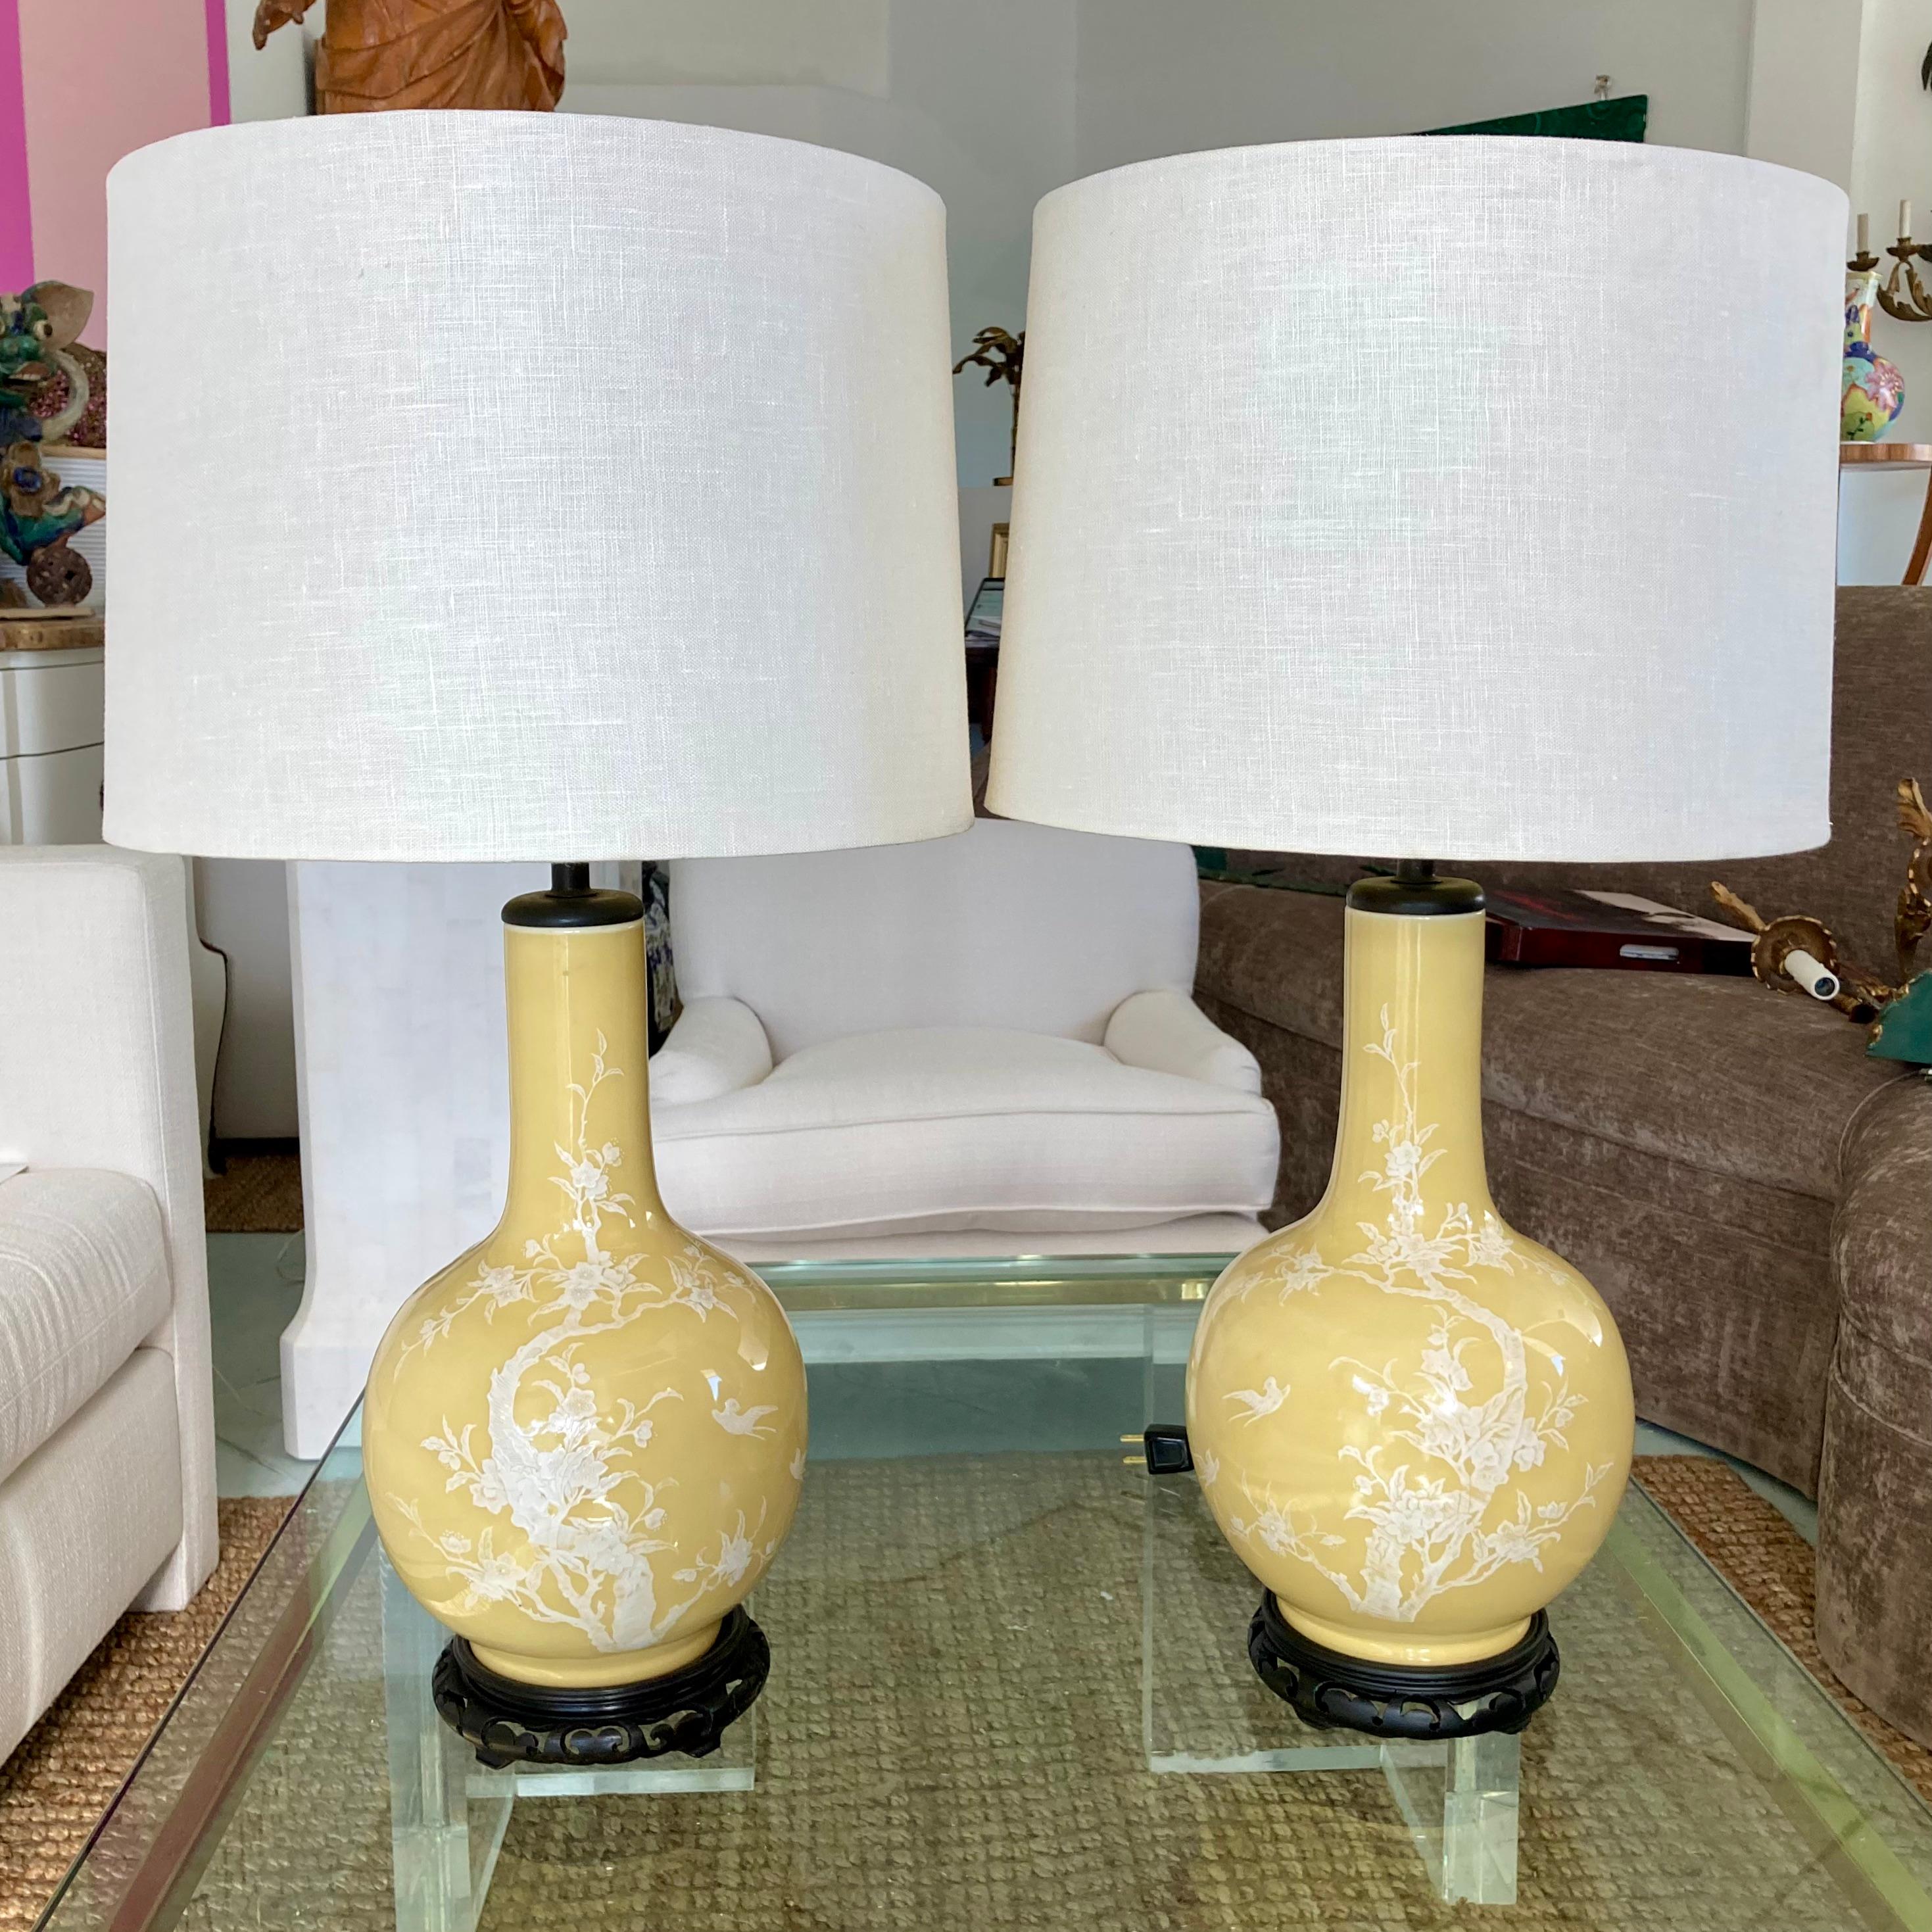 Magnifique paire de lampes de table en porcelaine chinoise d'Asie jaune sur des bases en bois sculpté. Ajoutez-les à vos intérieurs et plateaux de table d'inspiration chinoise.